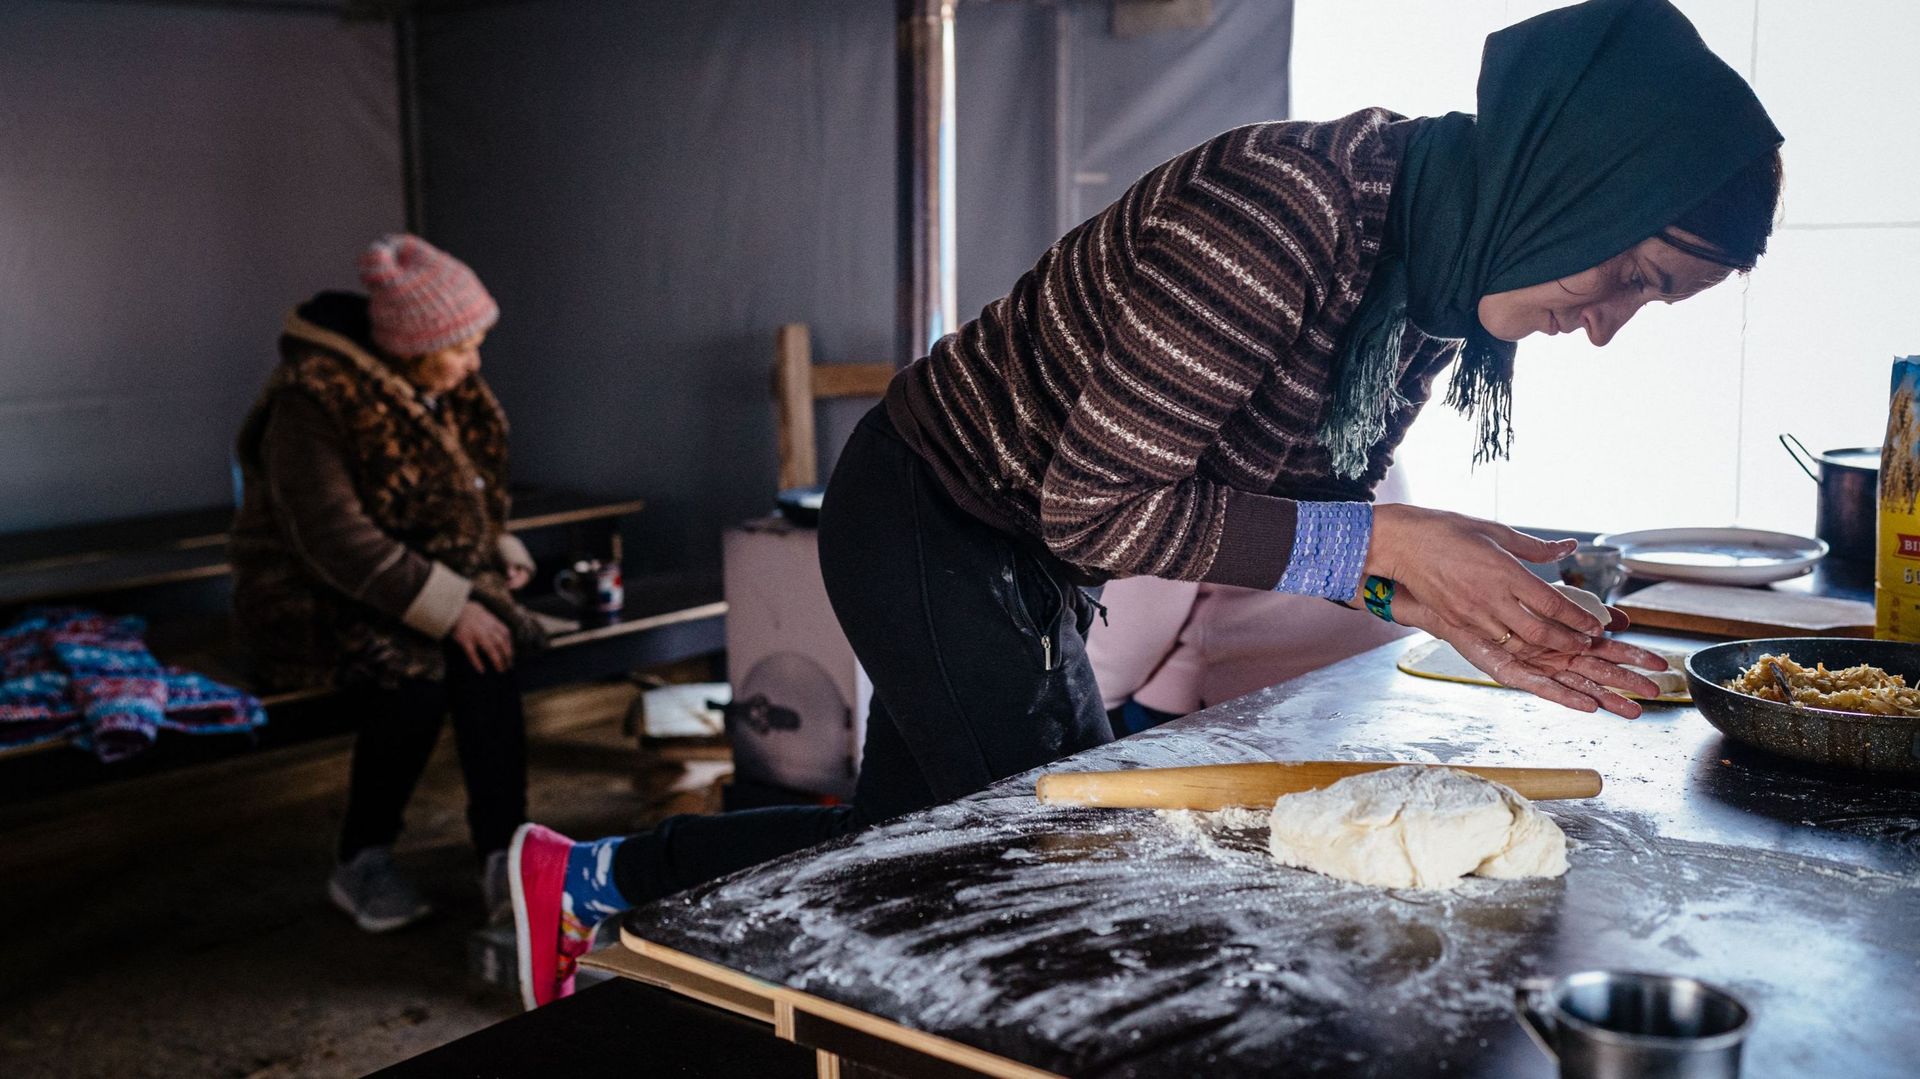 Une habitante, qui vit dans une ville modulaire après la destruction de sa maison, cuisine dans une tente où elle peut se réchauffer à Borodyanka, près de Kiev, le 4 décembre 2022, en pleine invasion russe de l’Ukraine. Avec des températures en dessous de